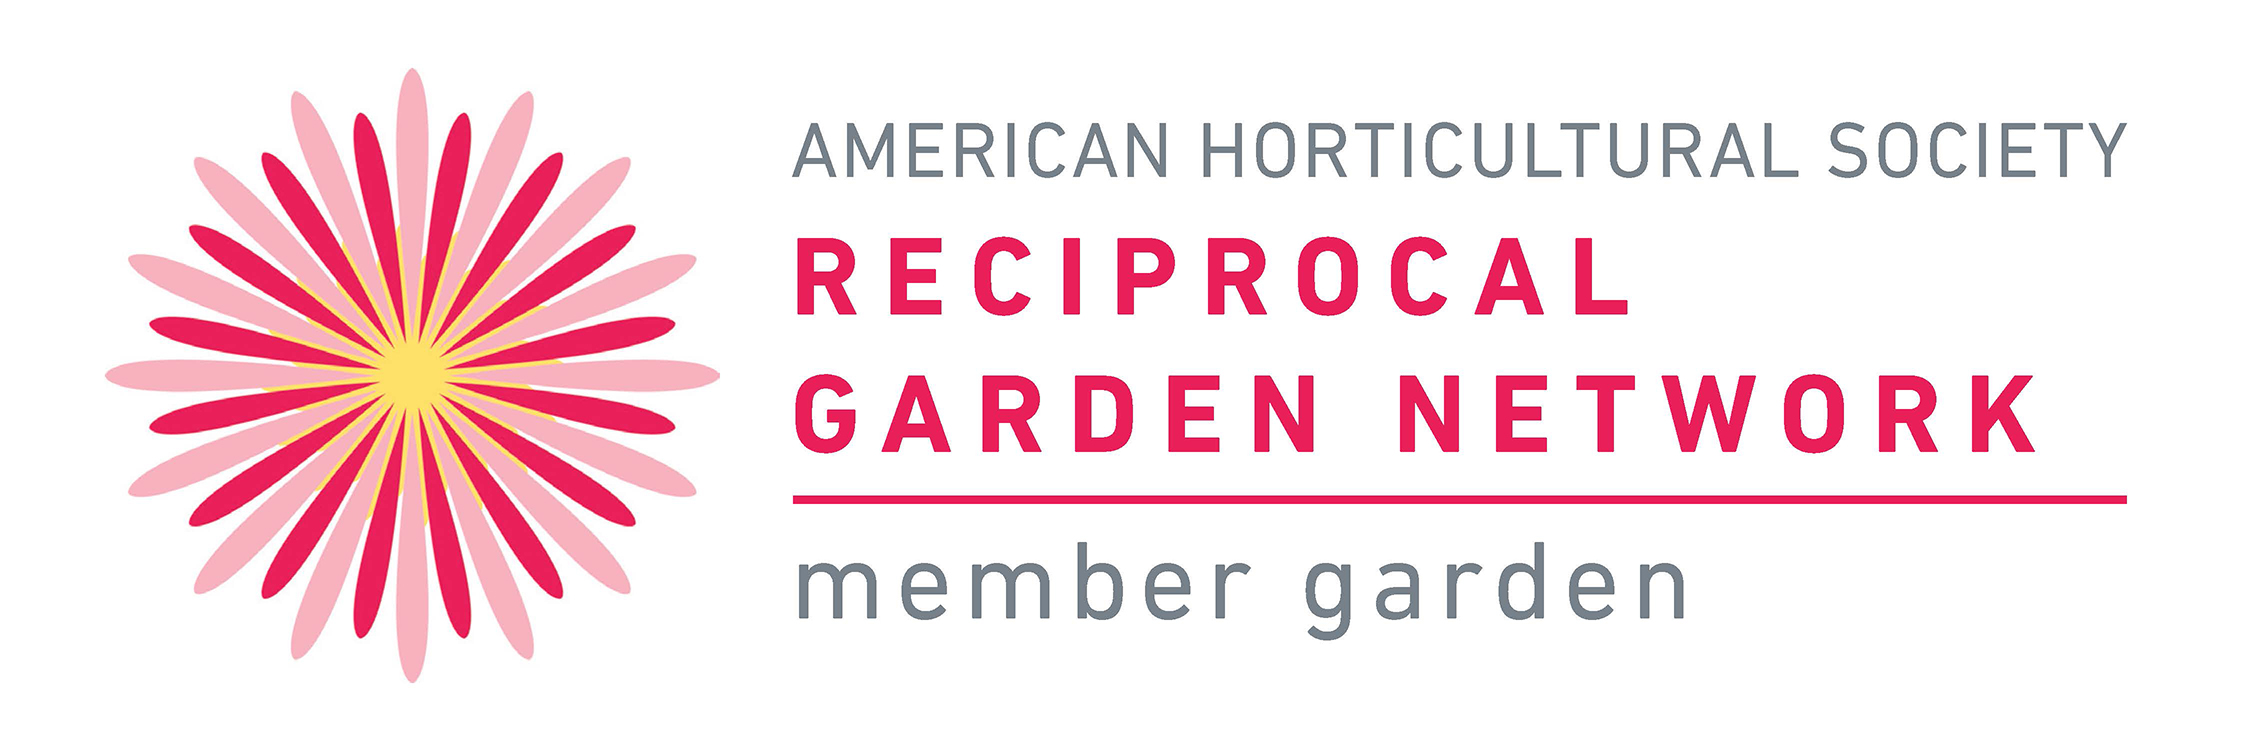 American Horticultural Society Reciprocal Garden Network logo